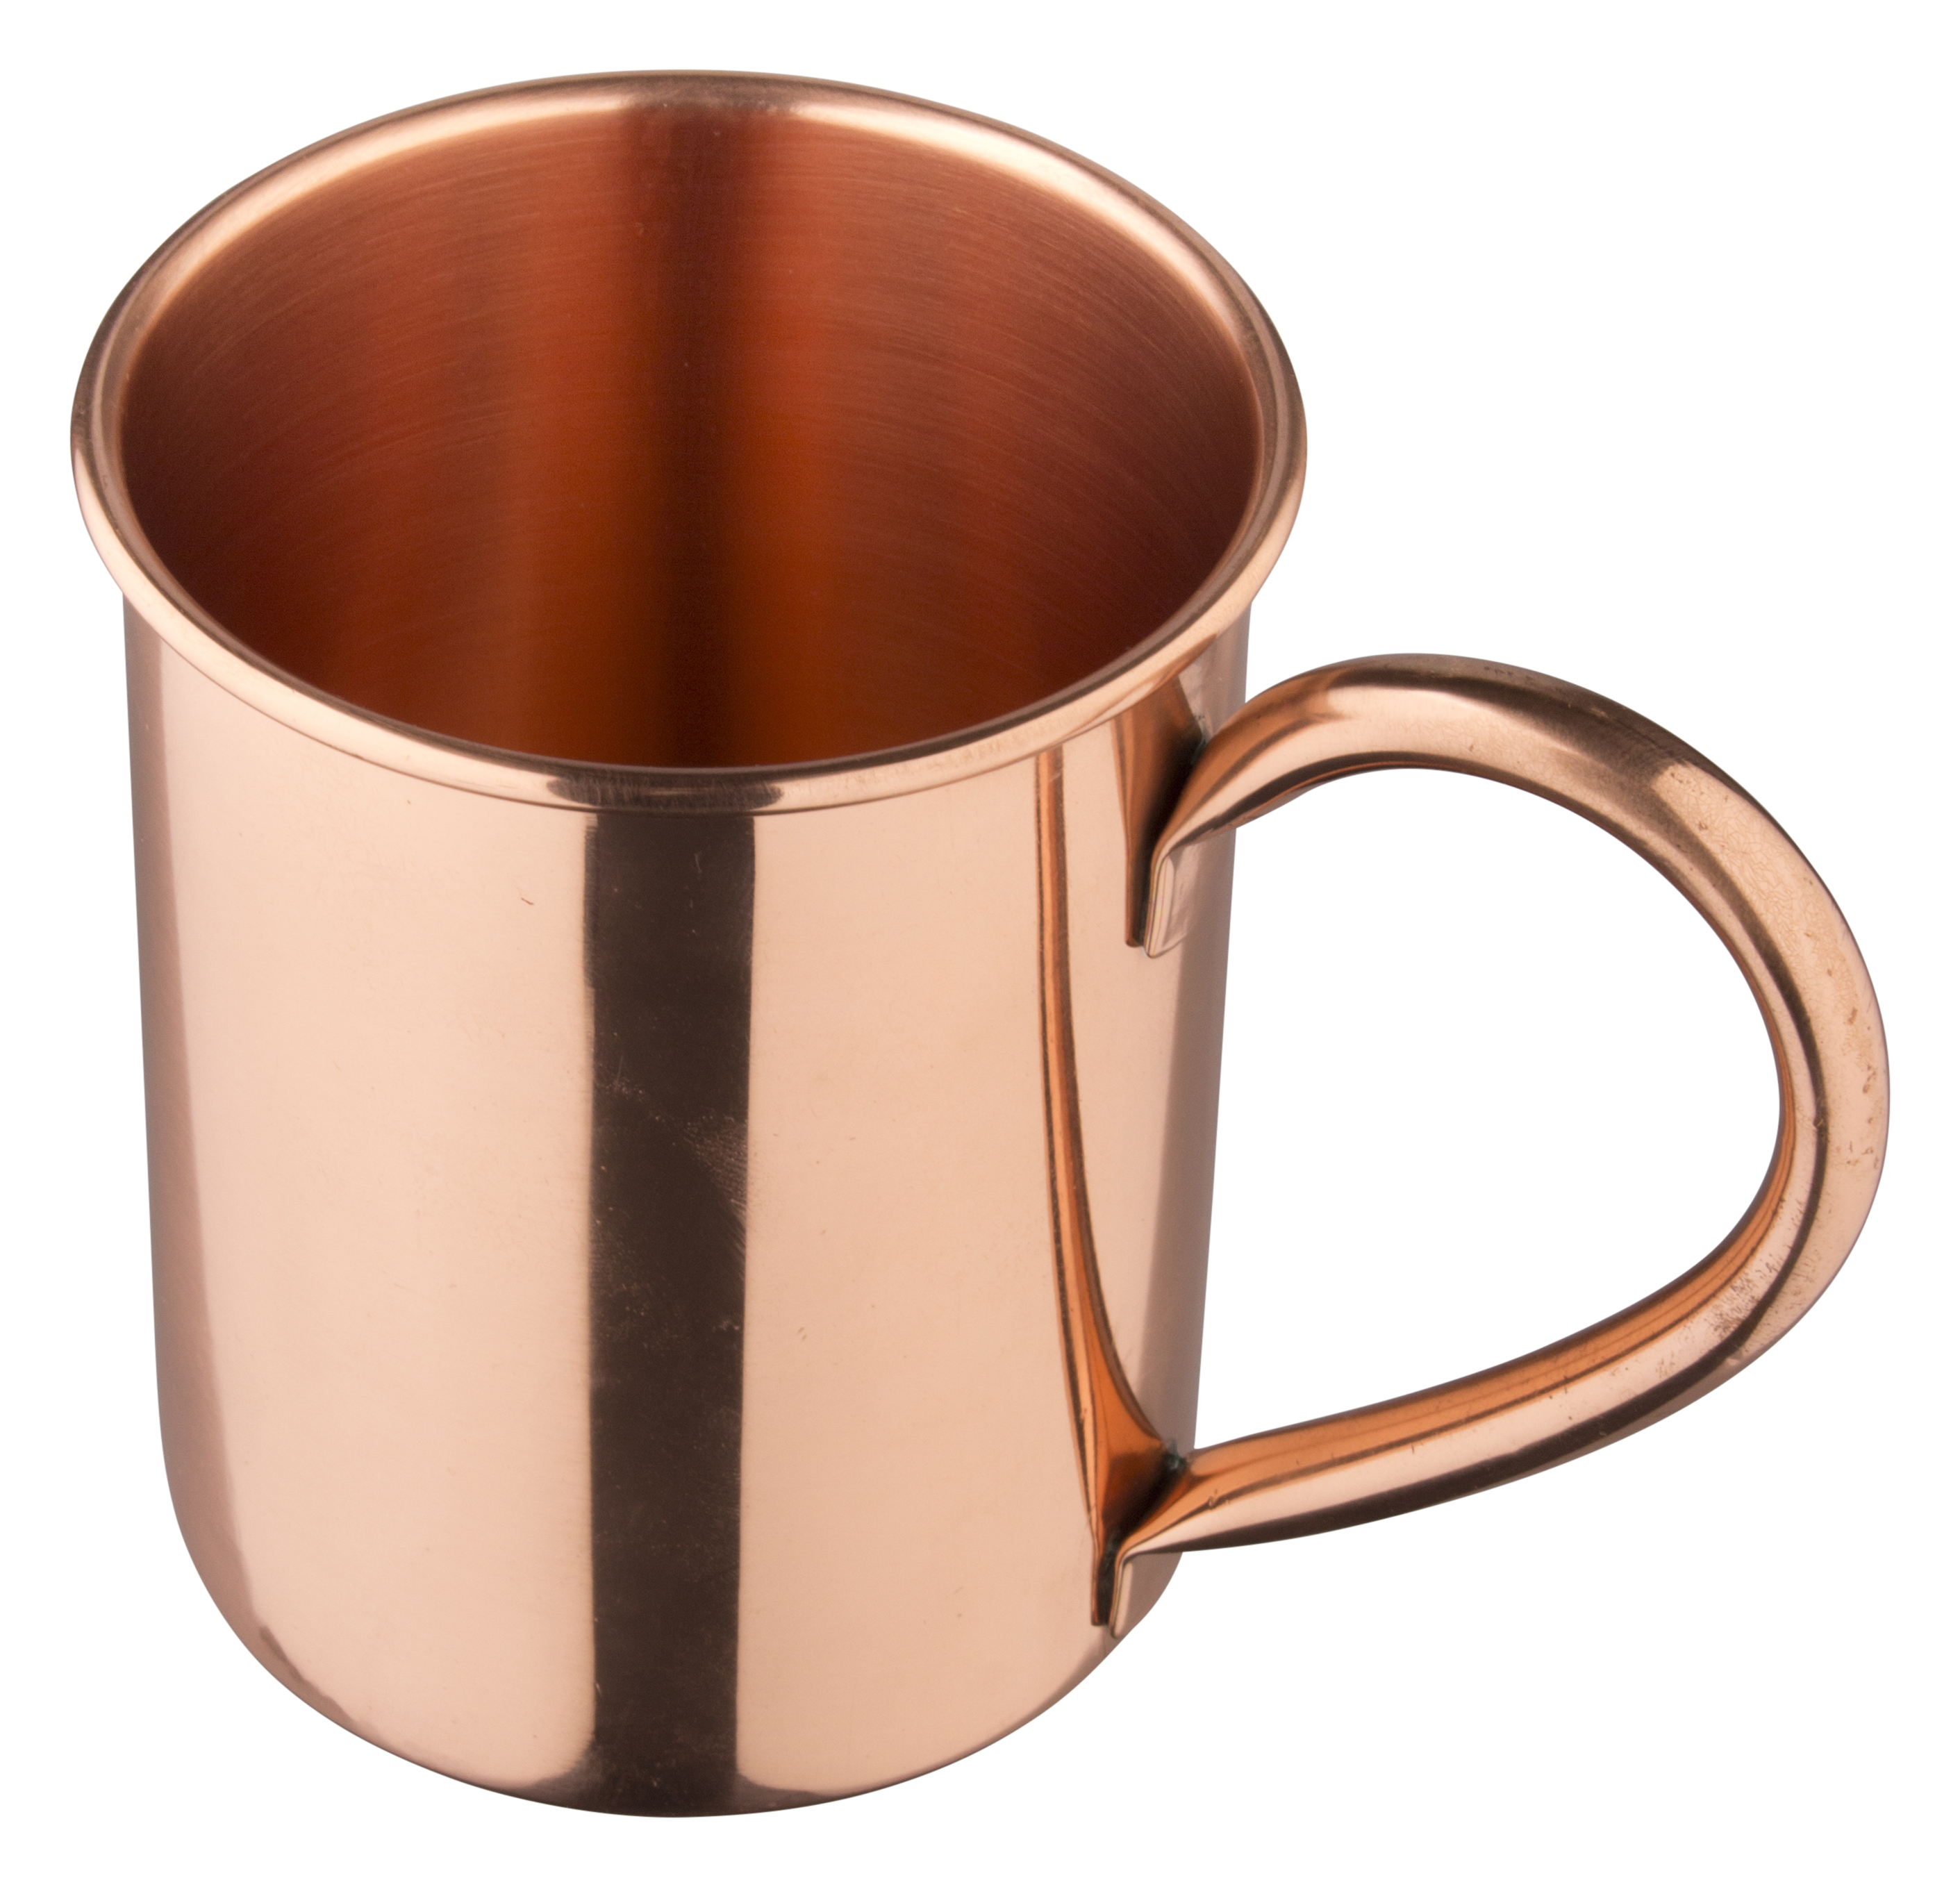 Moscow Mule copper mug - 430ml-470ml